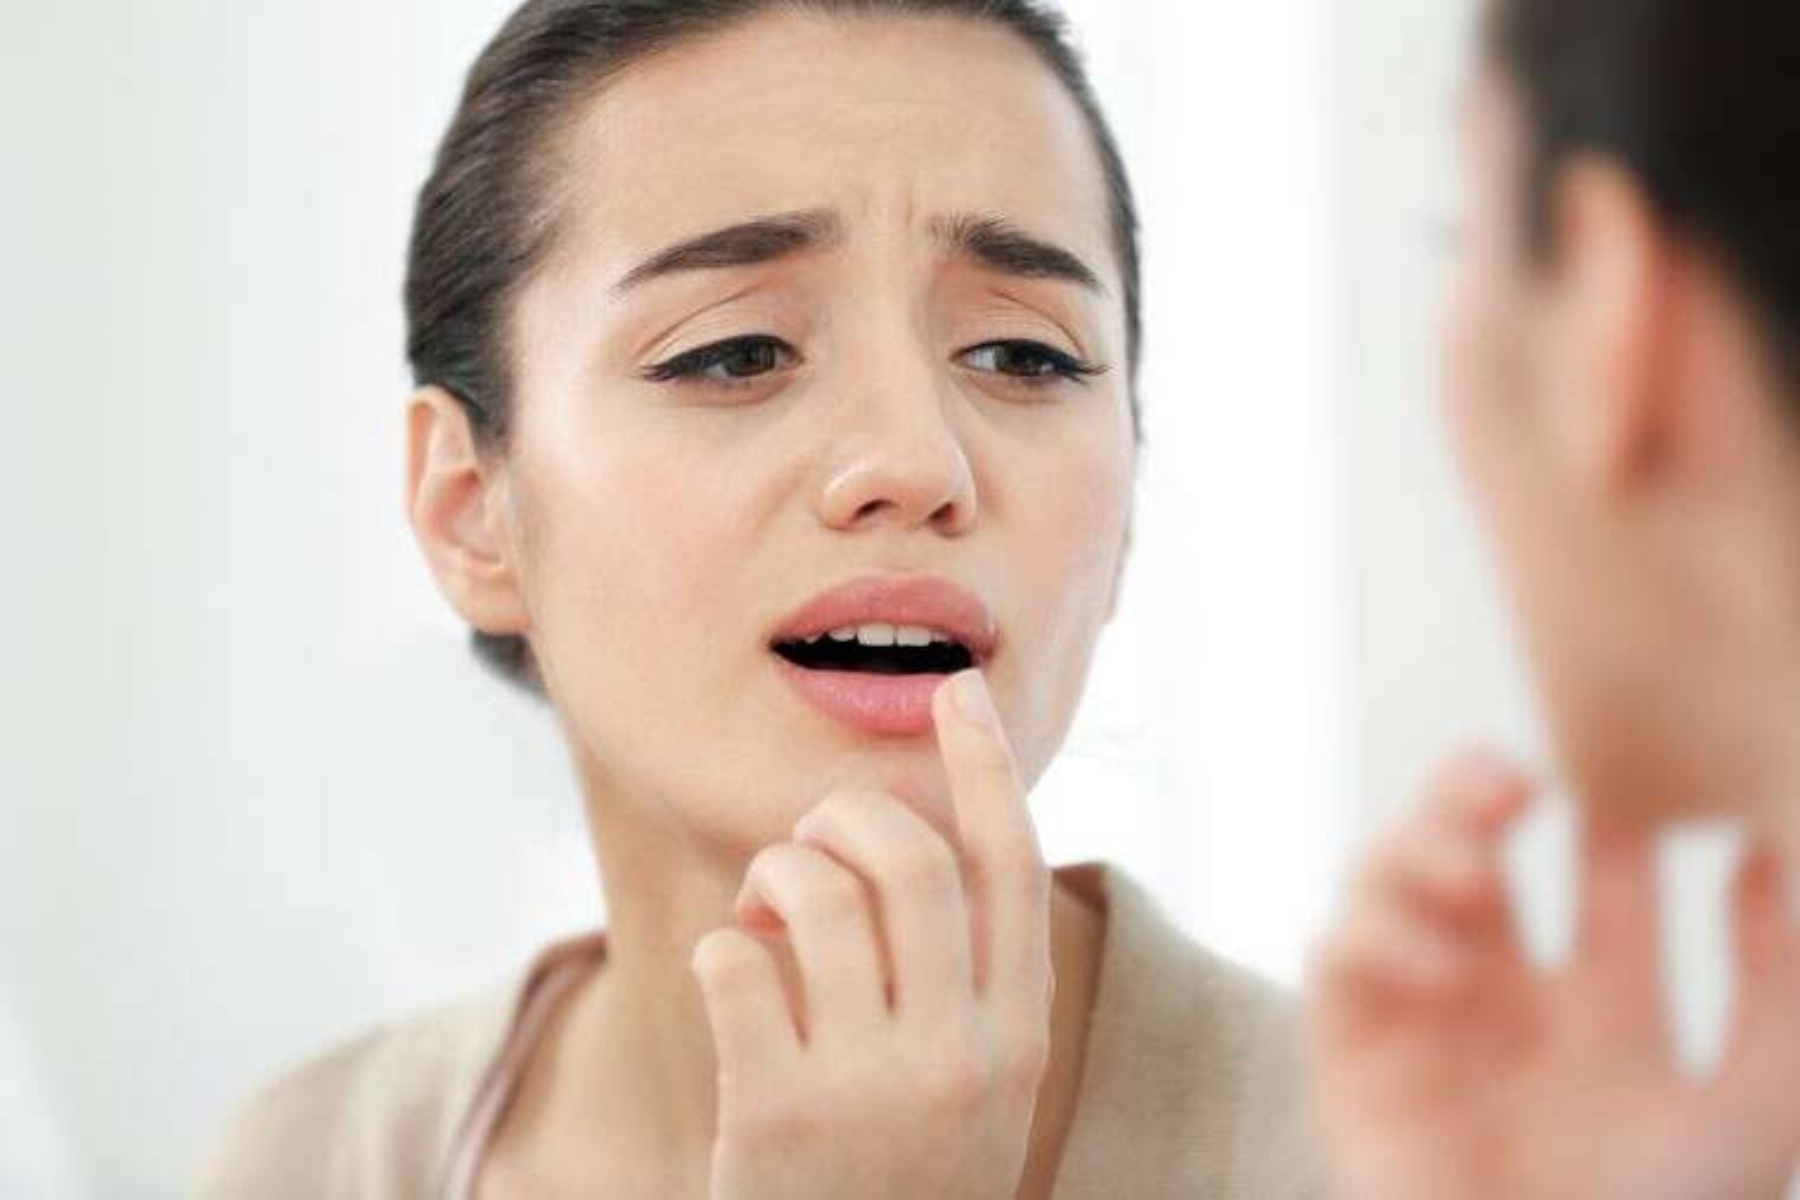 Σκασμένα χείλη: Πώς να εξασφαλίσετε βελούδινα χείλη χωρίς πληγές;